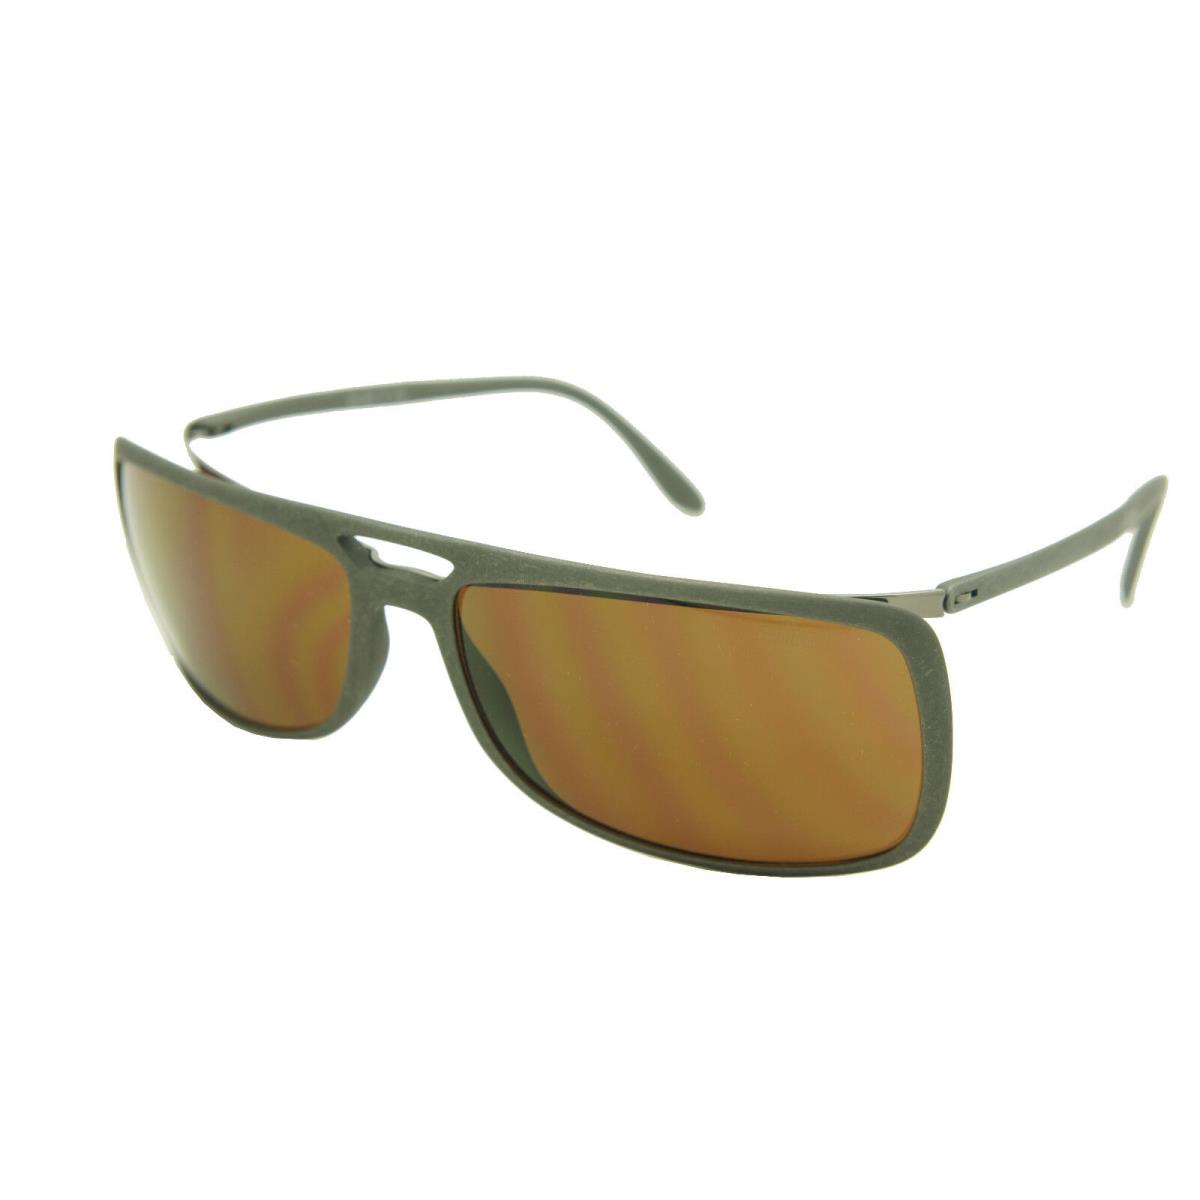 Silhouette Sunglasses Titan Design Limited Edition 4055-6136 Matte Grey Stone